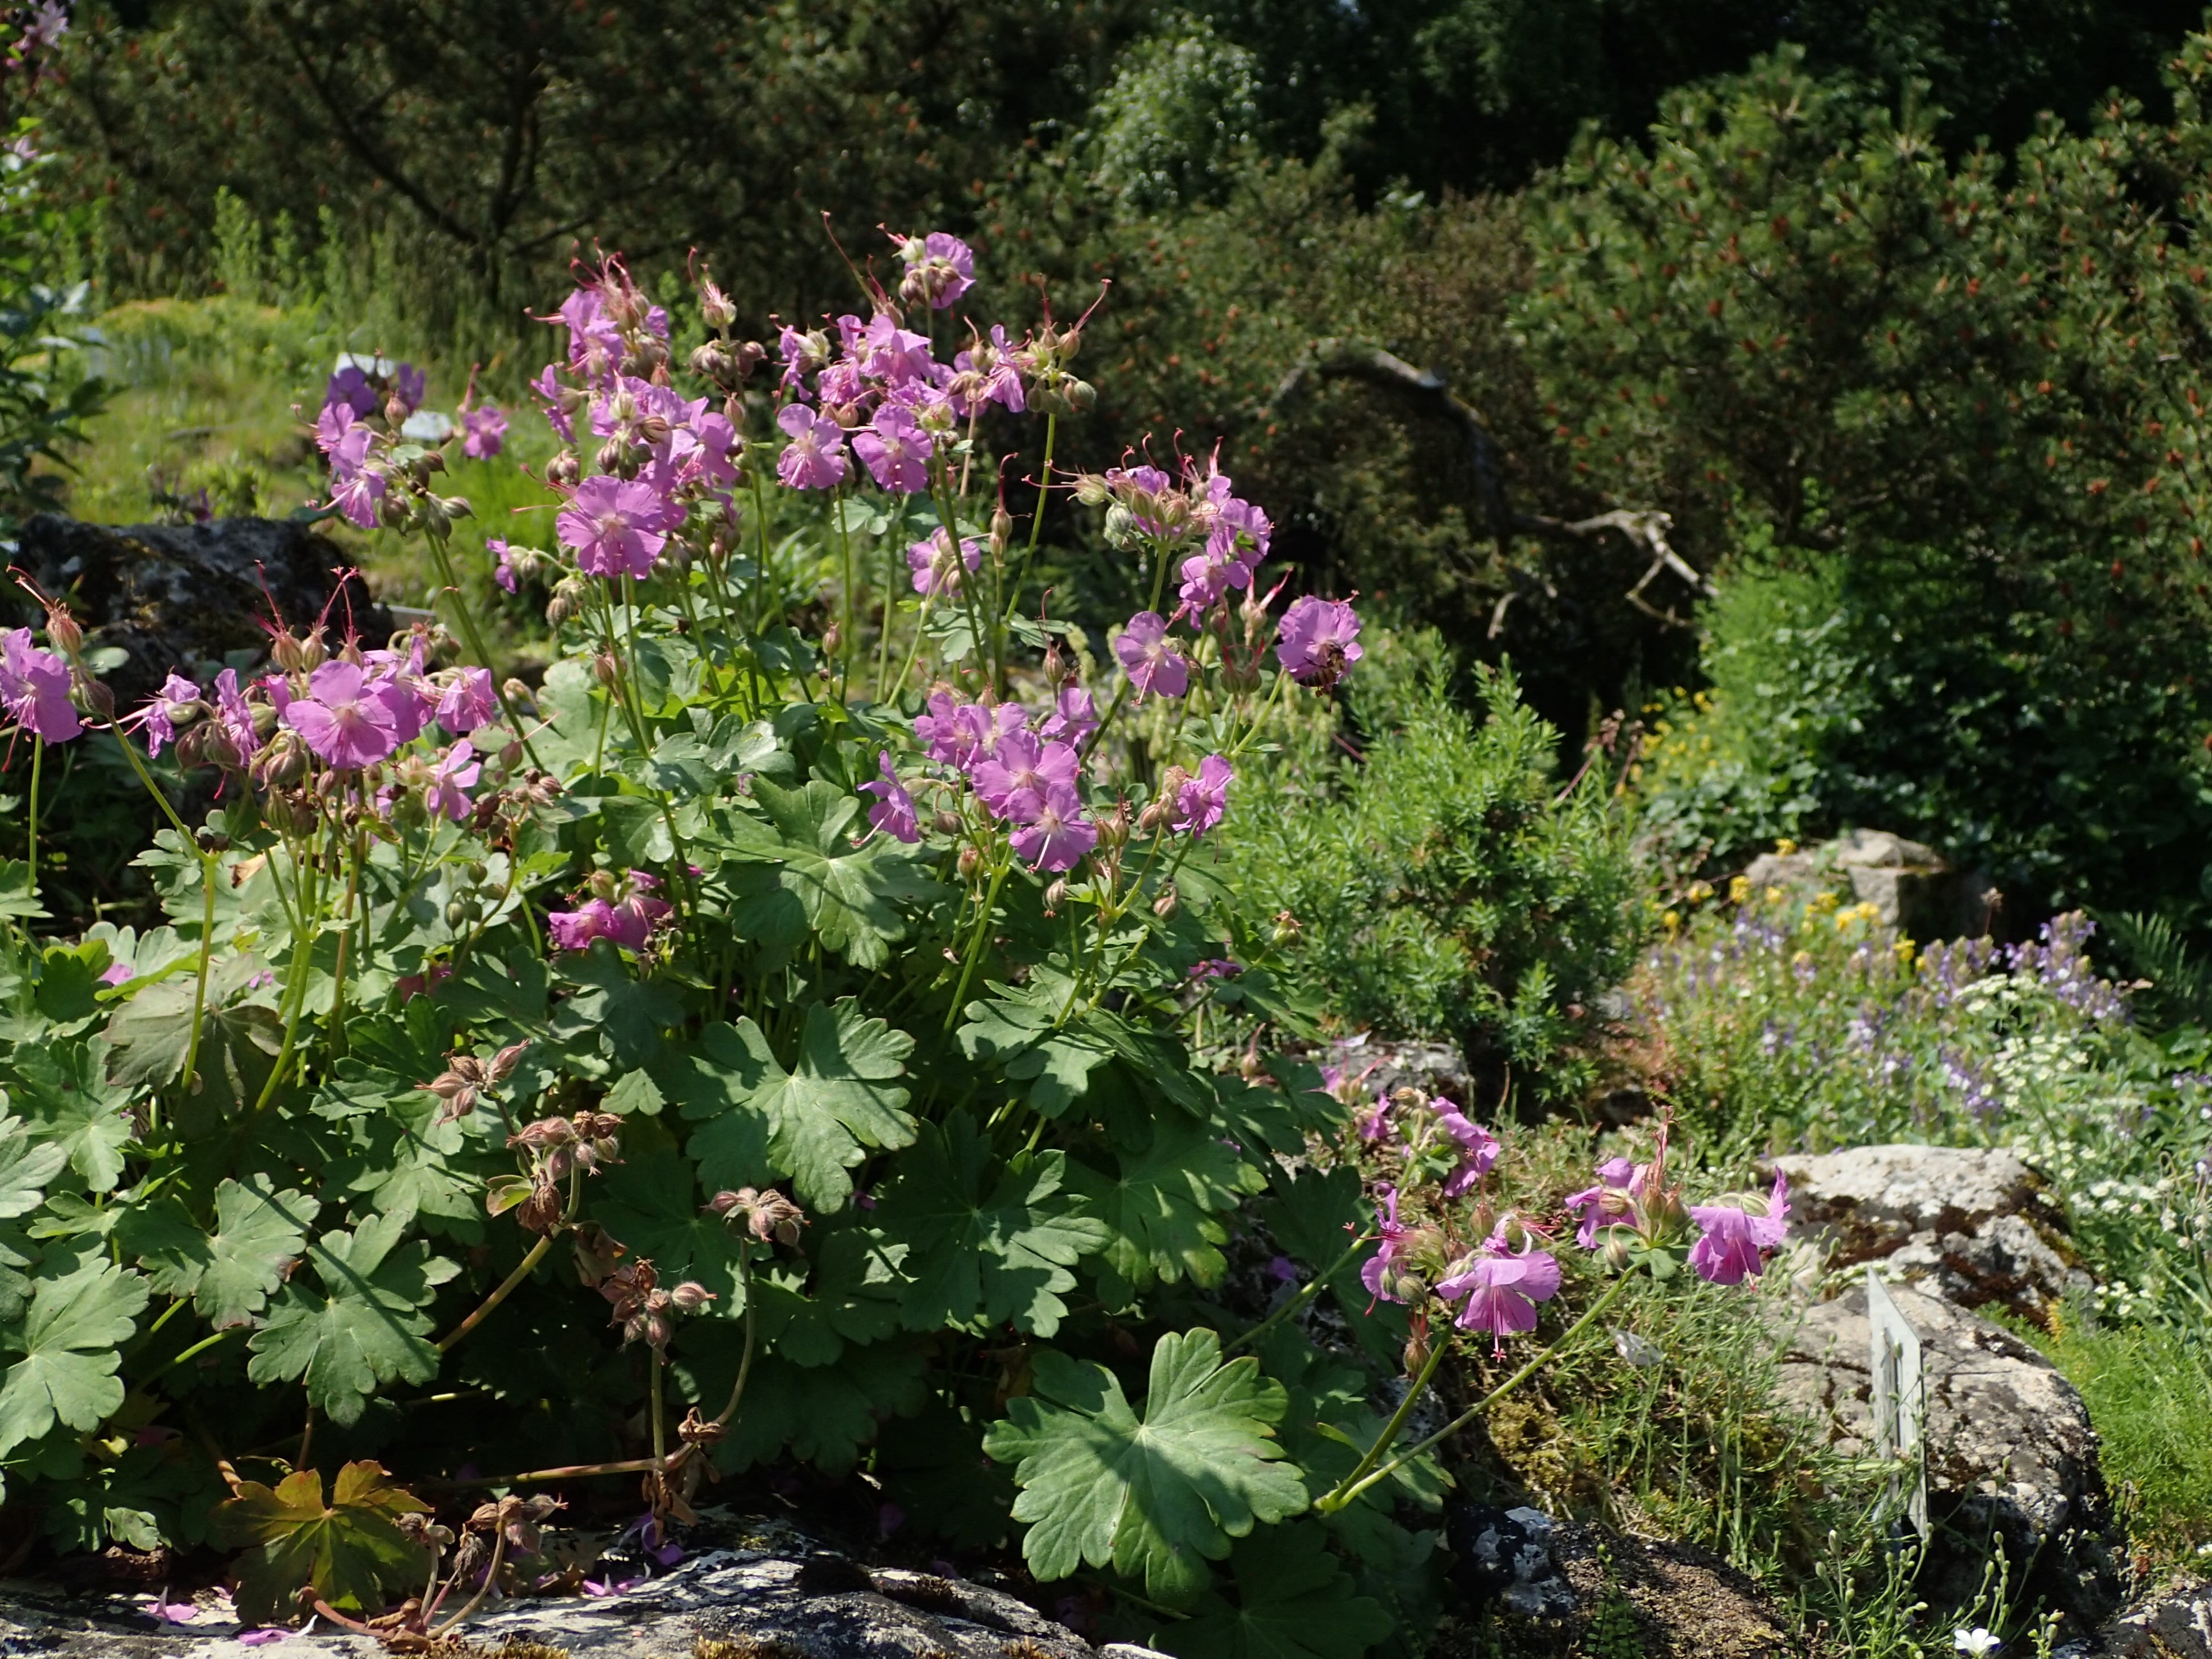 Geranium cantabrigiense in a wildflower garden with pink flowers